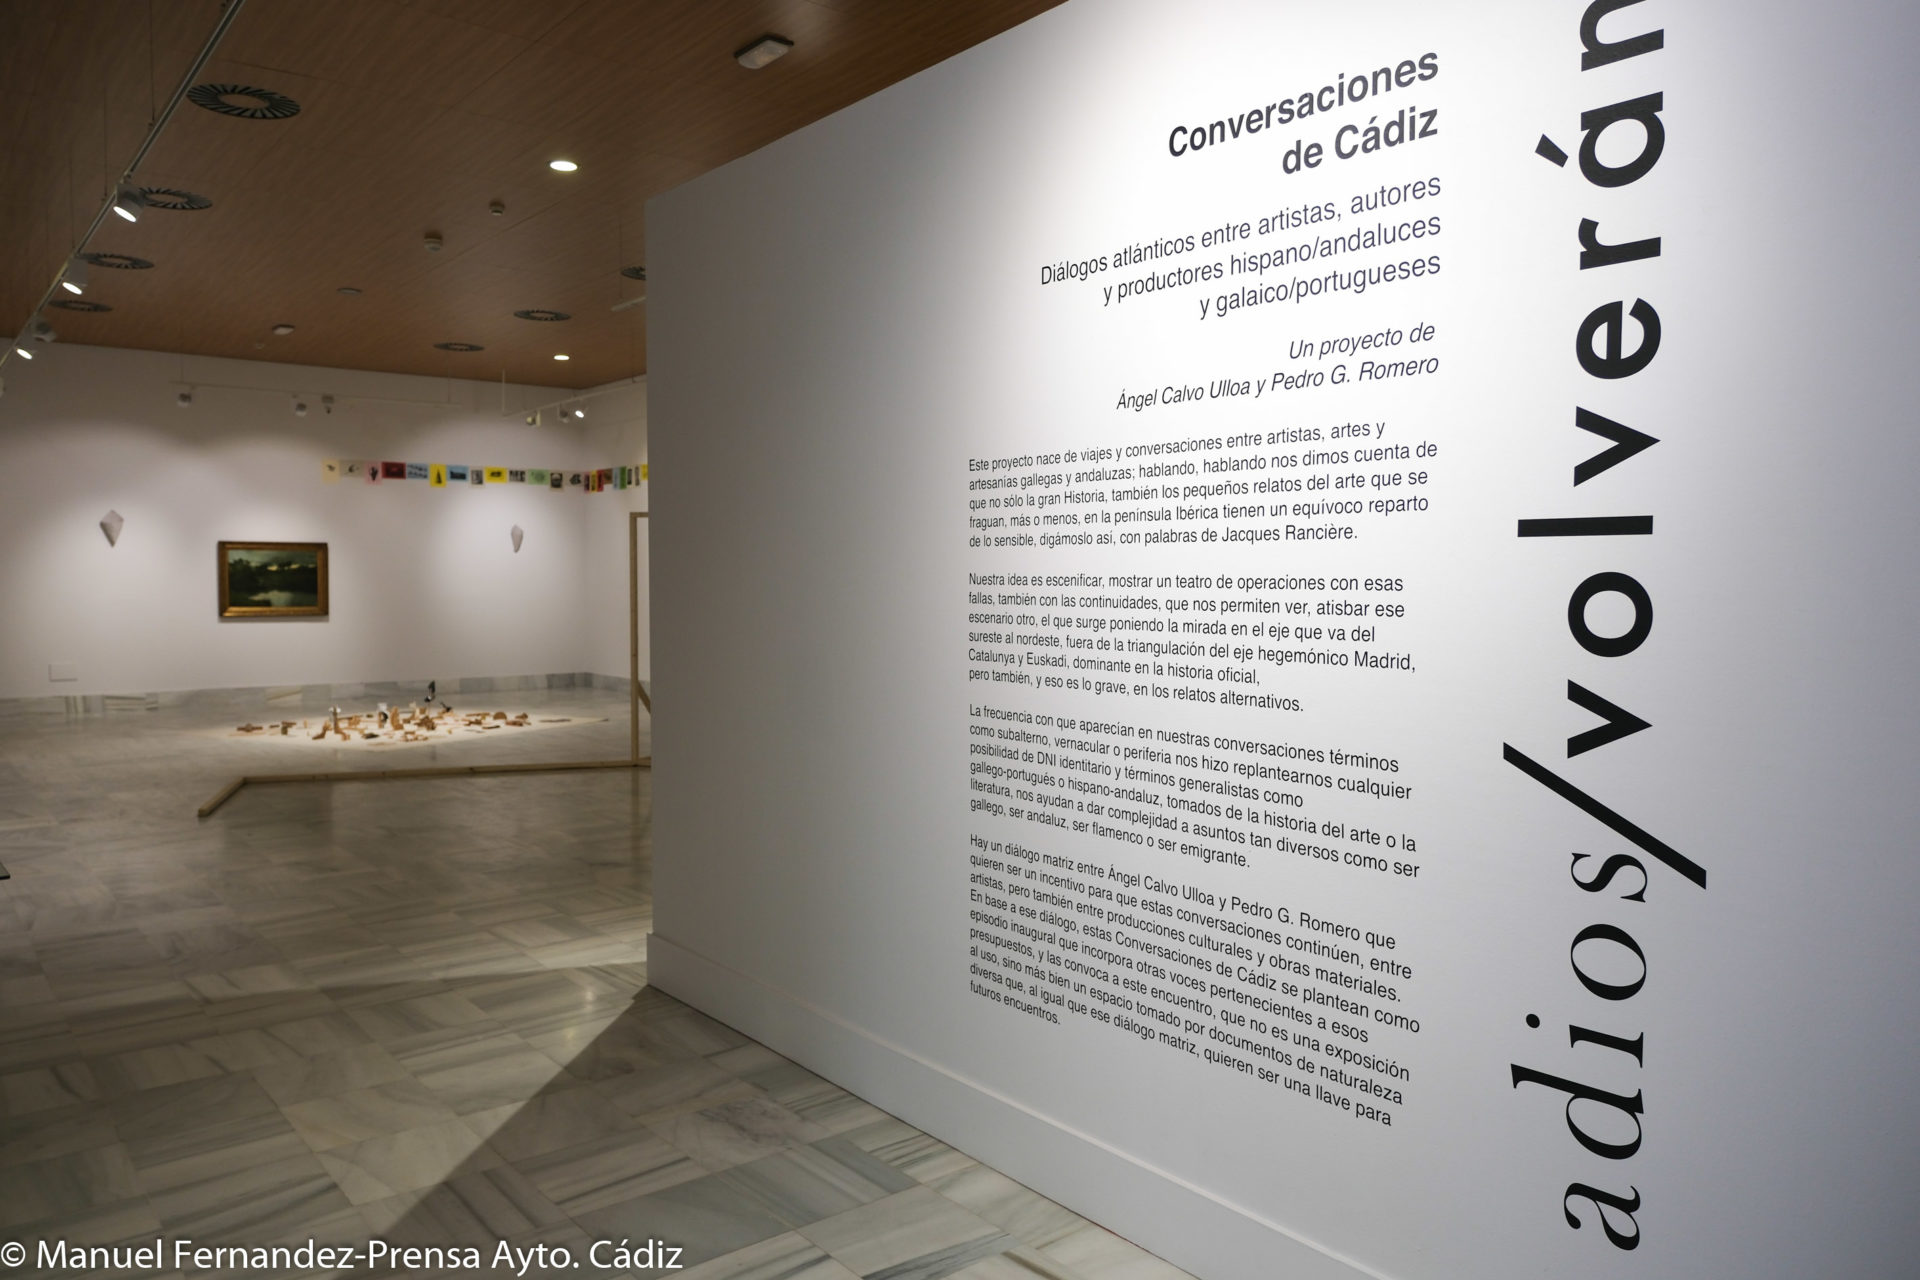 La Casa de Iberoamérica acoge una muestra de diálogos atlánticos que reúne a artistas hispano/andaluces y galaico/portugueses